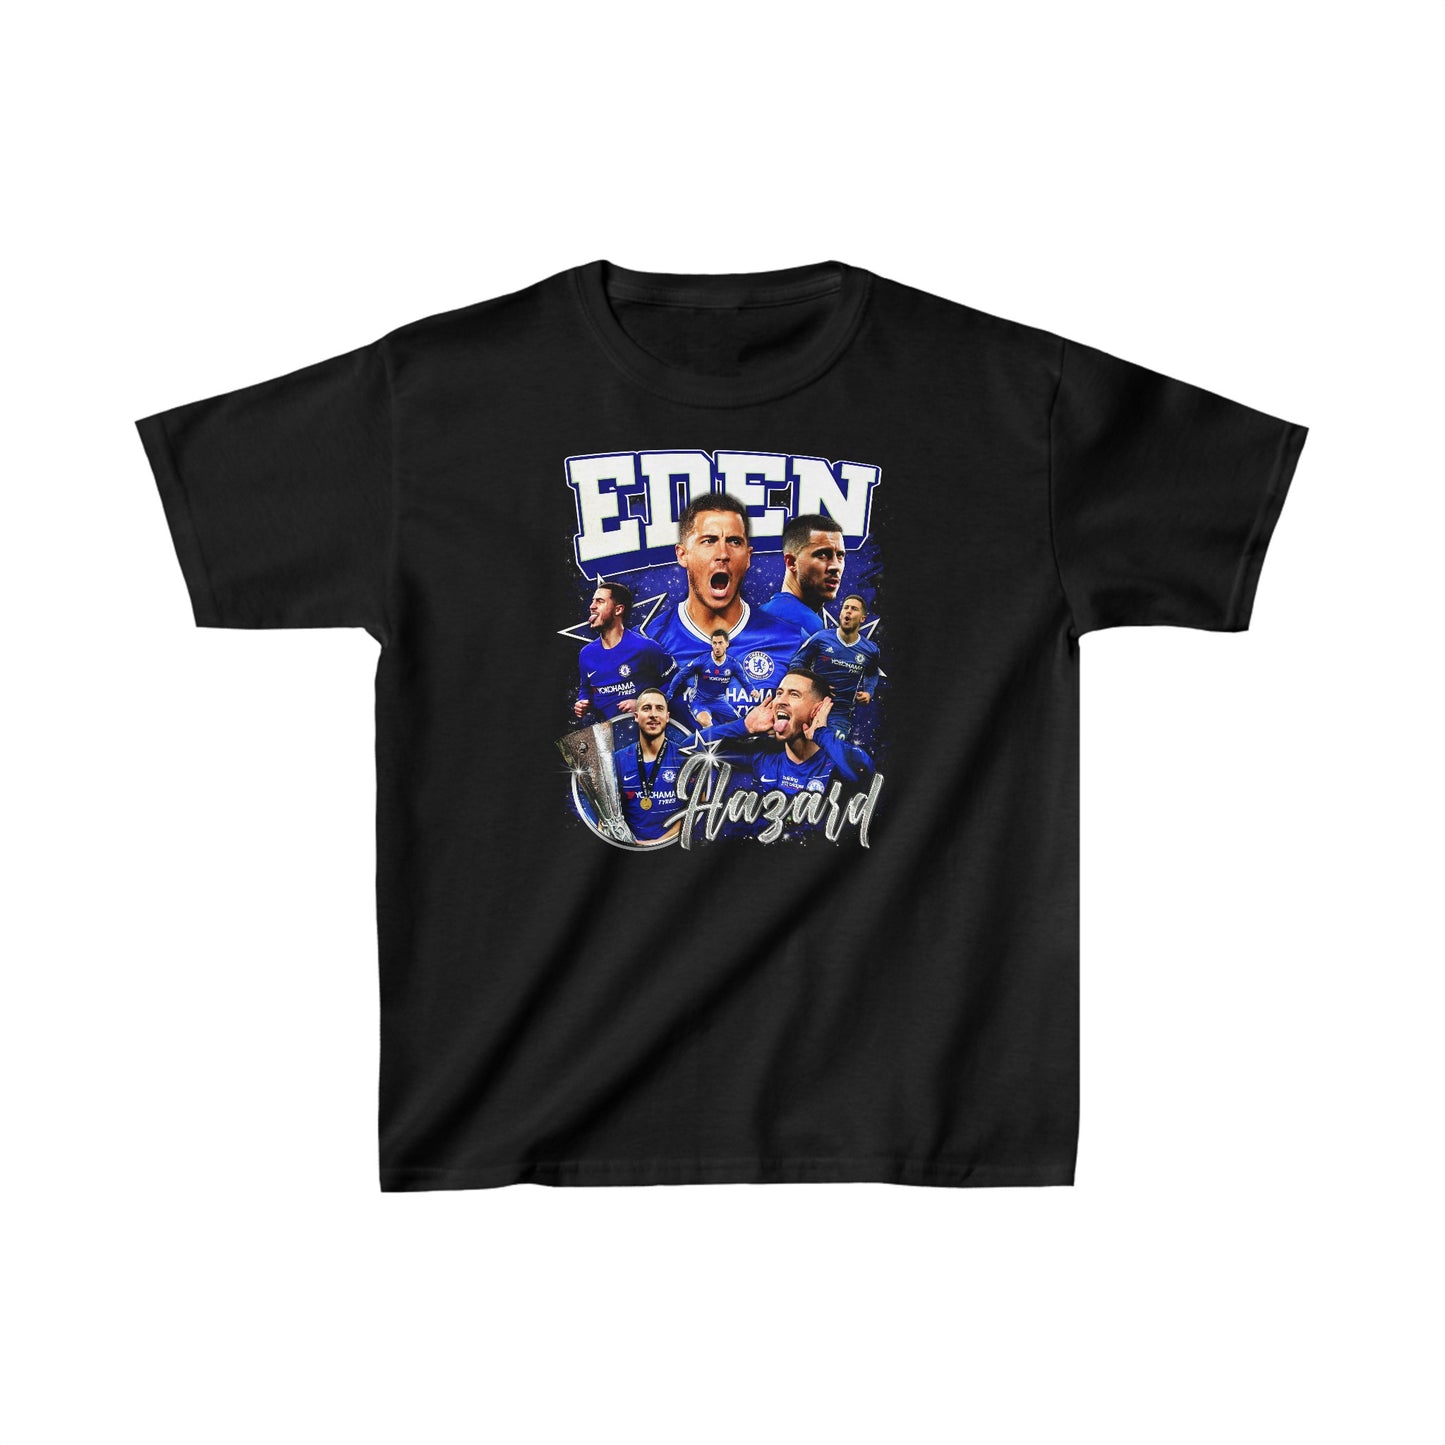 Eden Hazard Chelsea Graphic T-Shirt